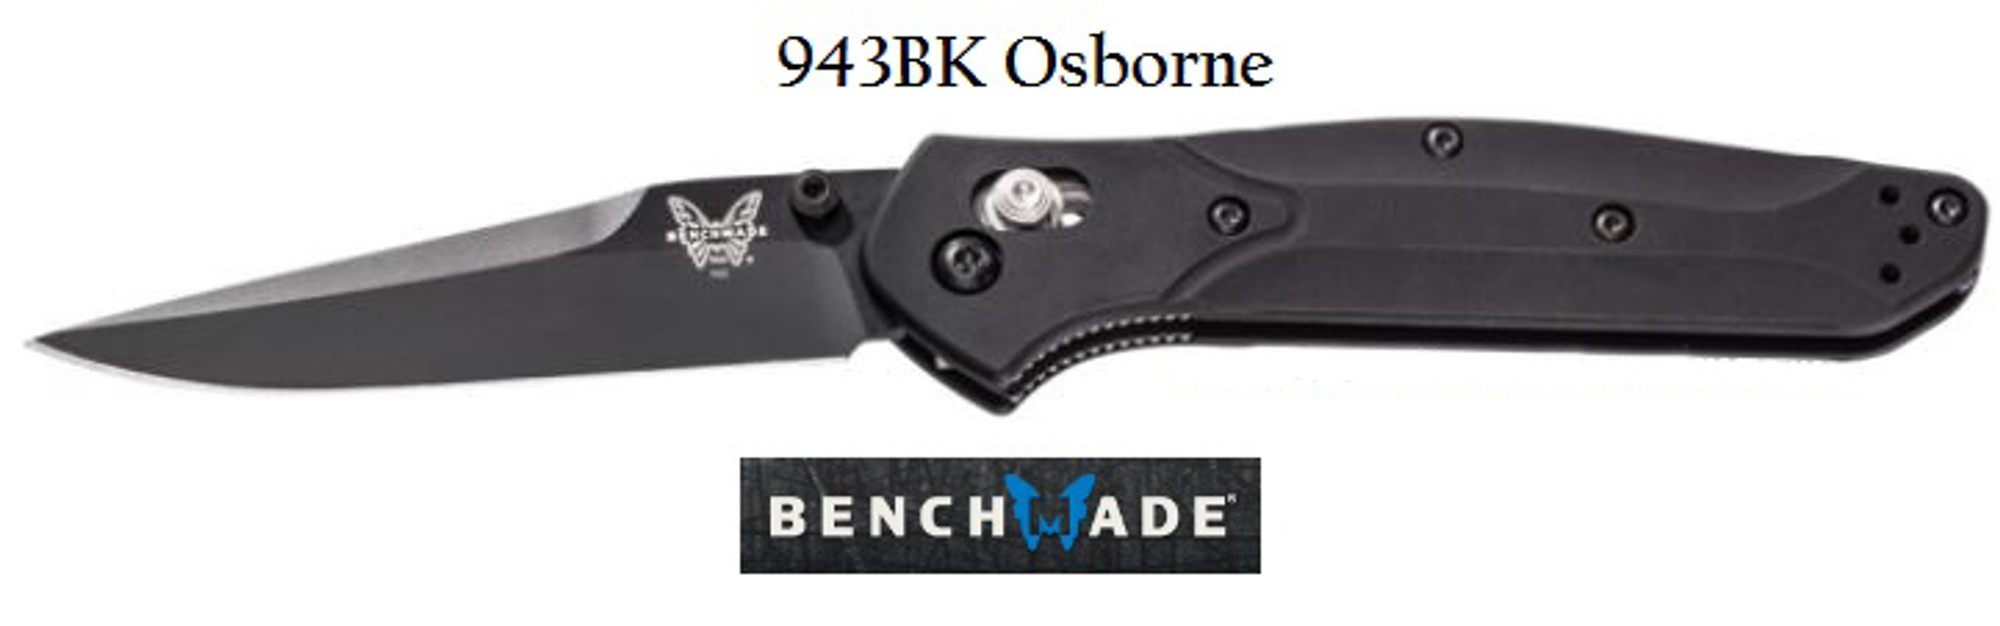 Benchmade 943BK Osborne Black Plain Edge